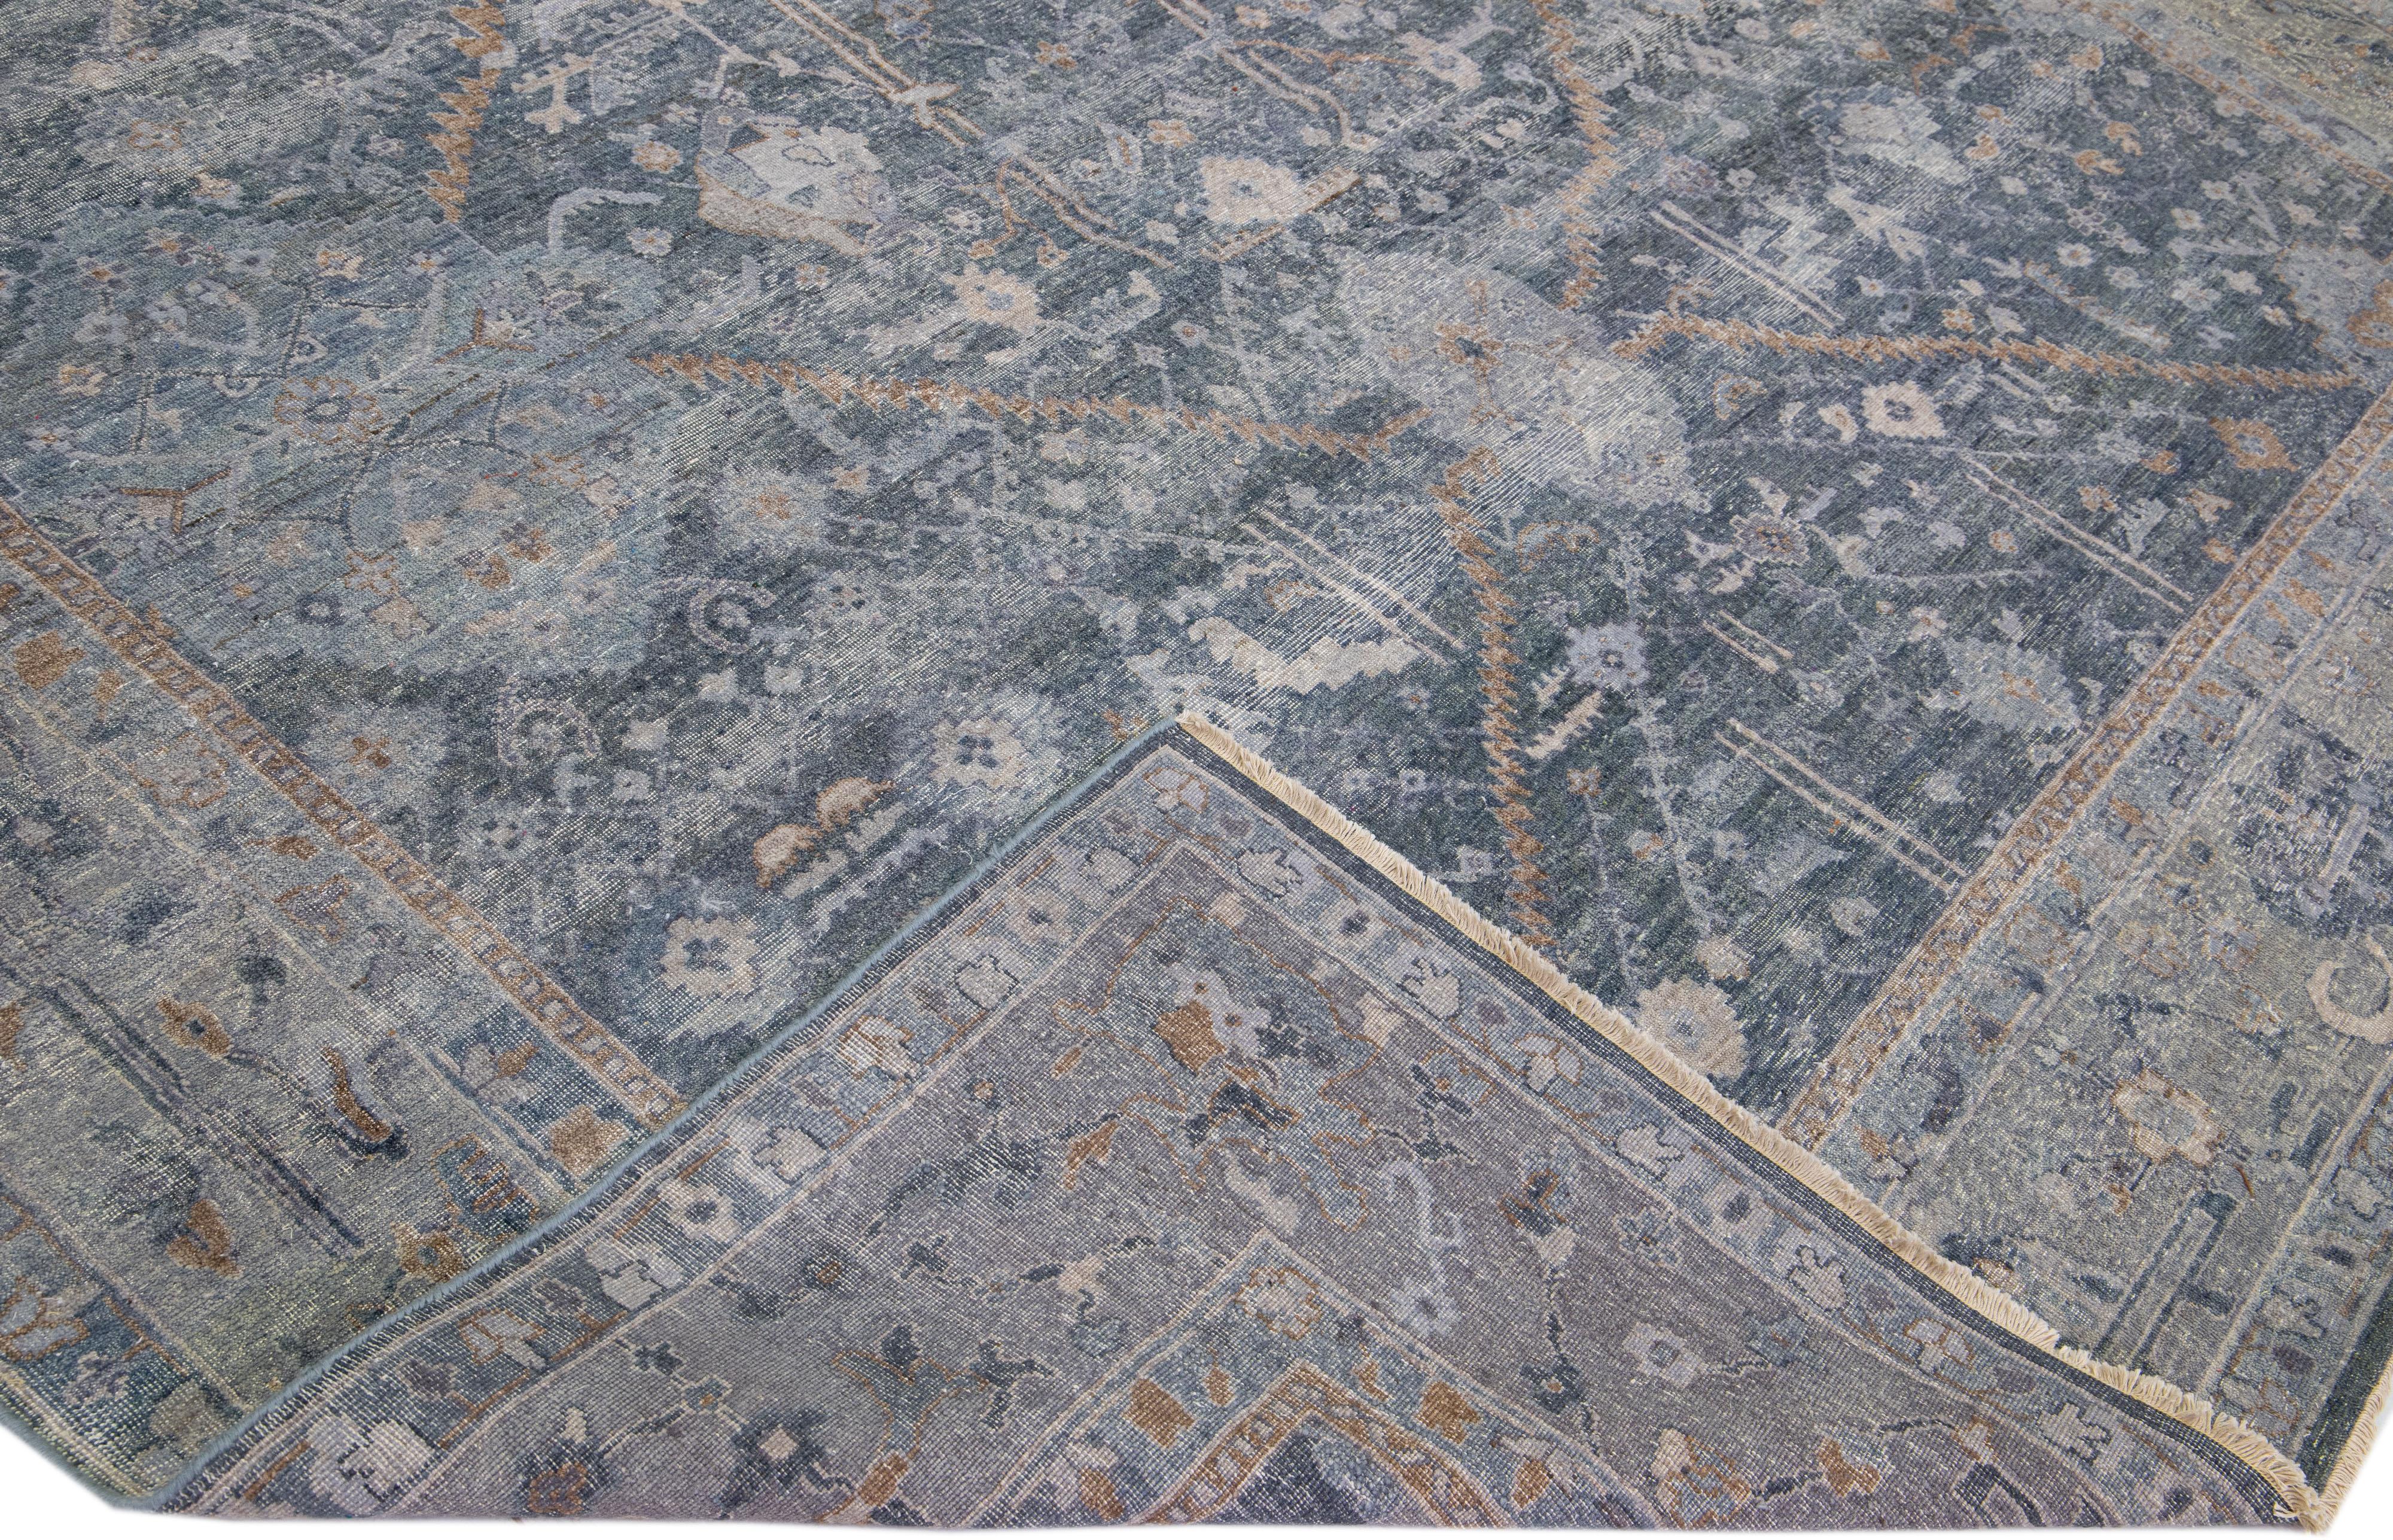 Die Artisan-Linie von Apadana ist eine Neuinterpretation antiker Teppiche, die auf elegante Weise eine auffällige antike Ästhetik in einen Raum bringt. Diese Teppichserie ist ausgesprochen einzigartig und definiert das Aussehen eines antiken